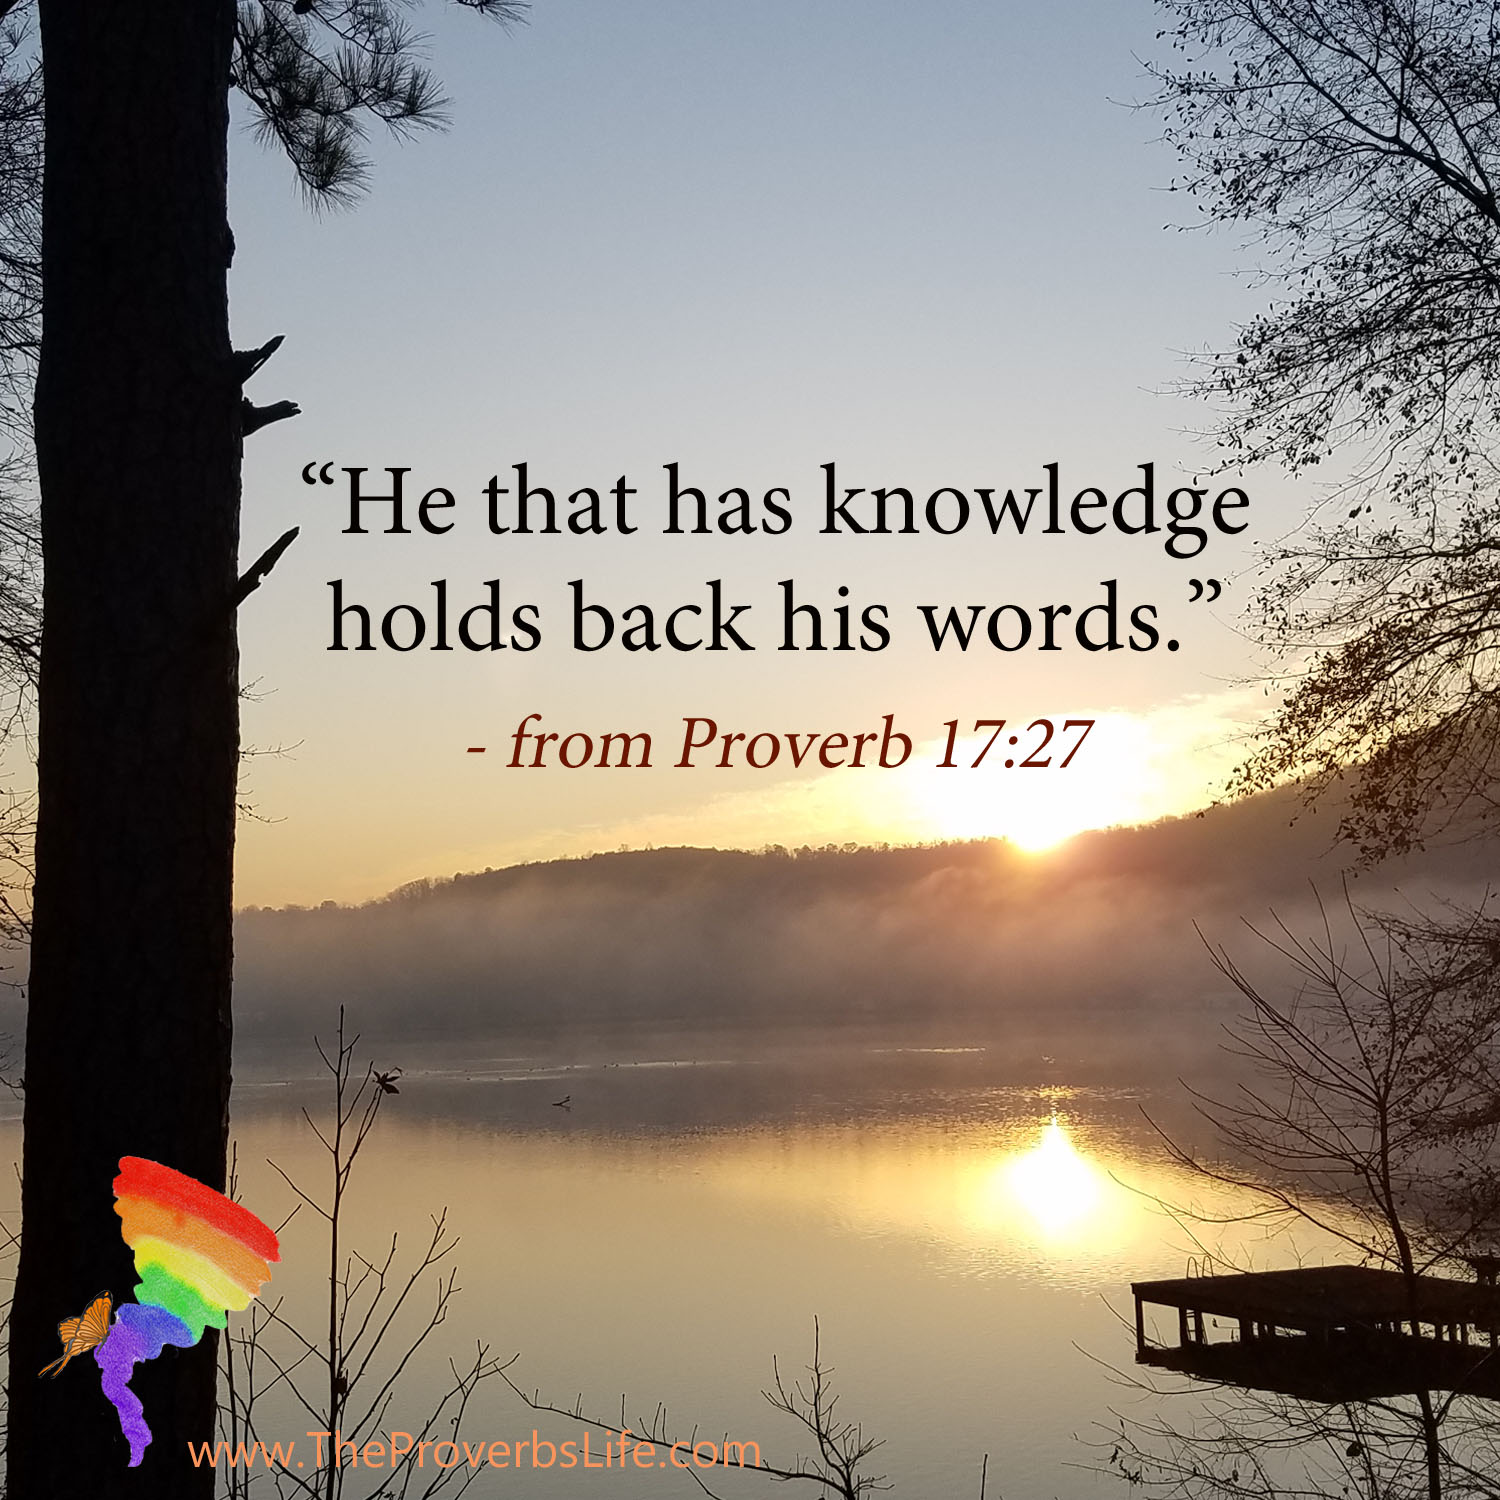 Scripture Focus - Proverb 17:27